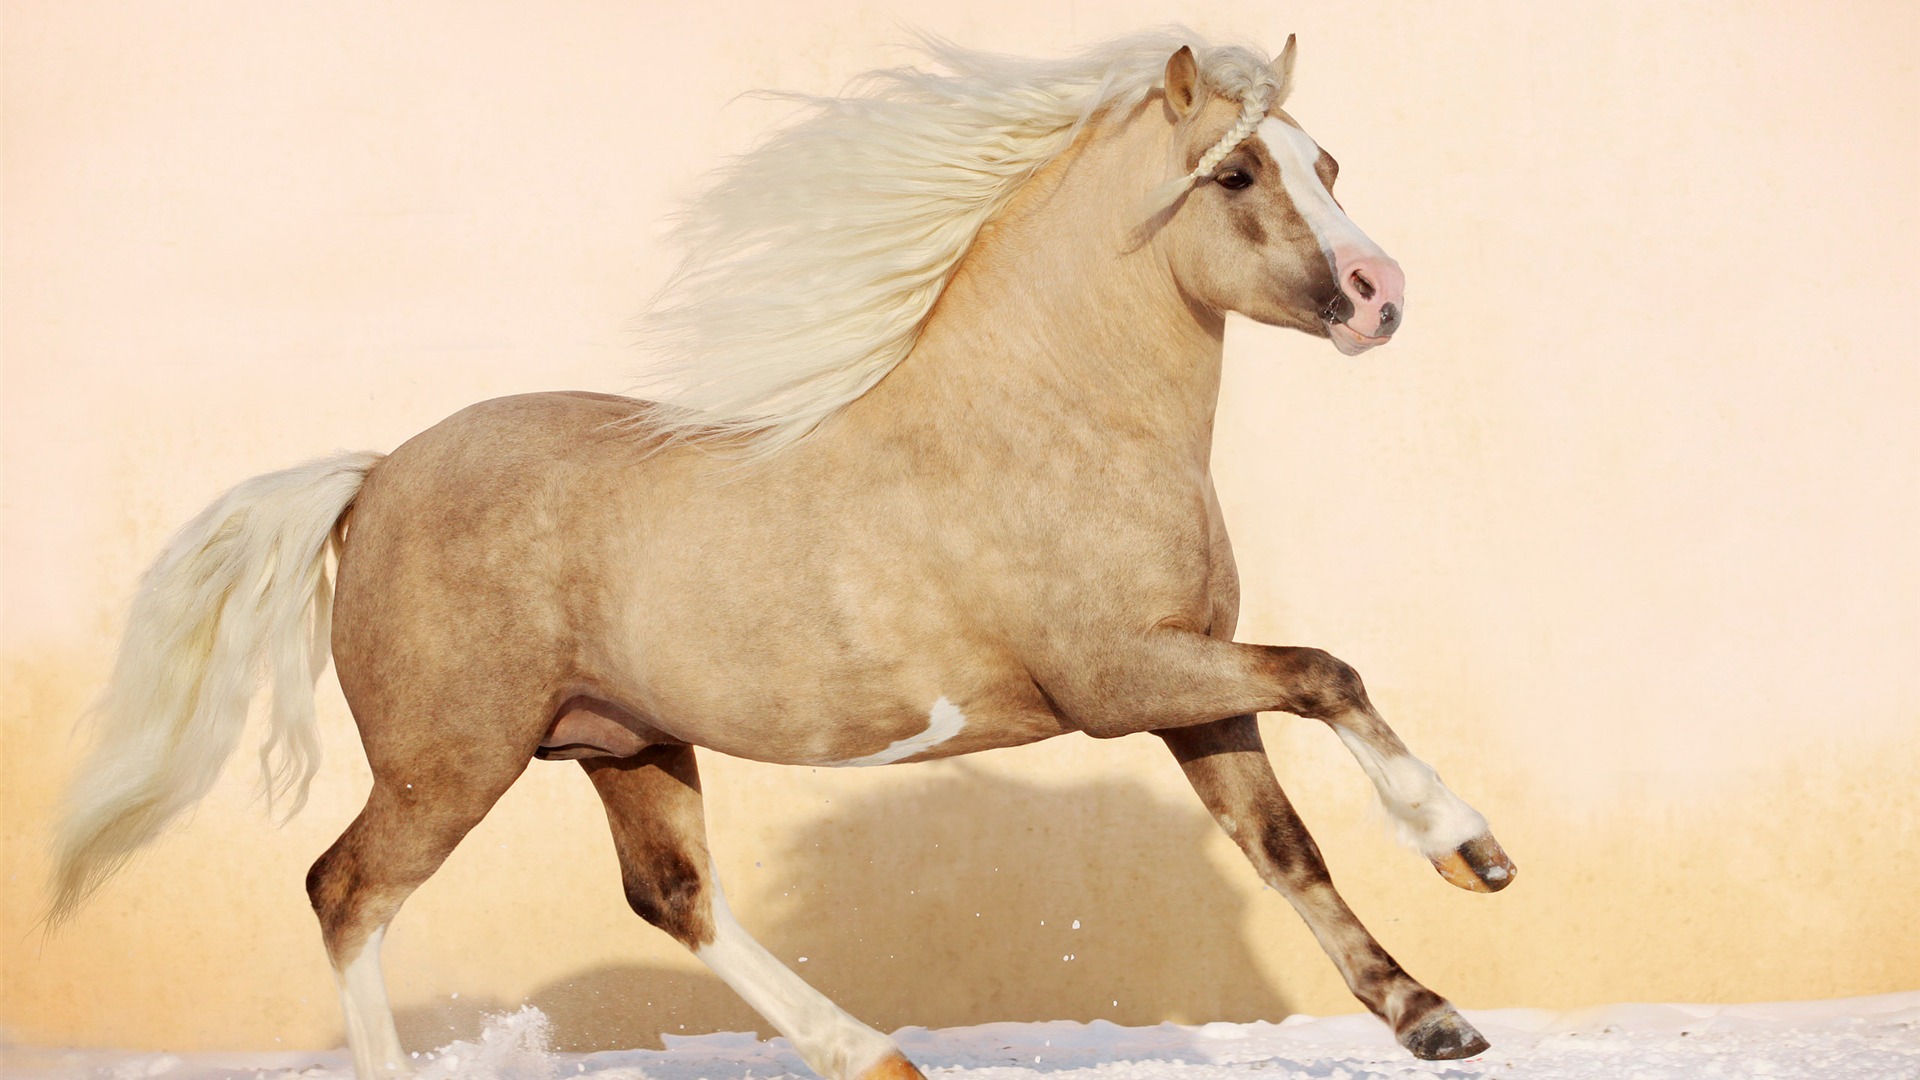 Super horse photo wallpaper (1) #10 - 1920x1080